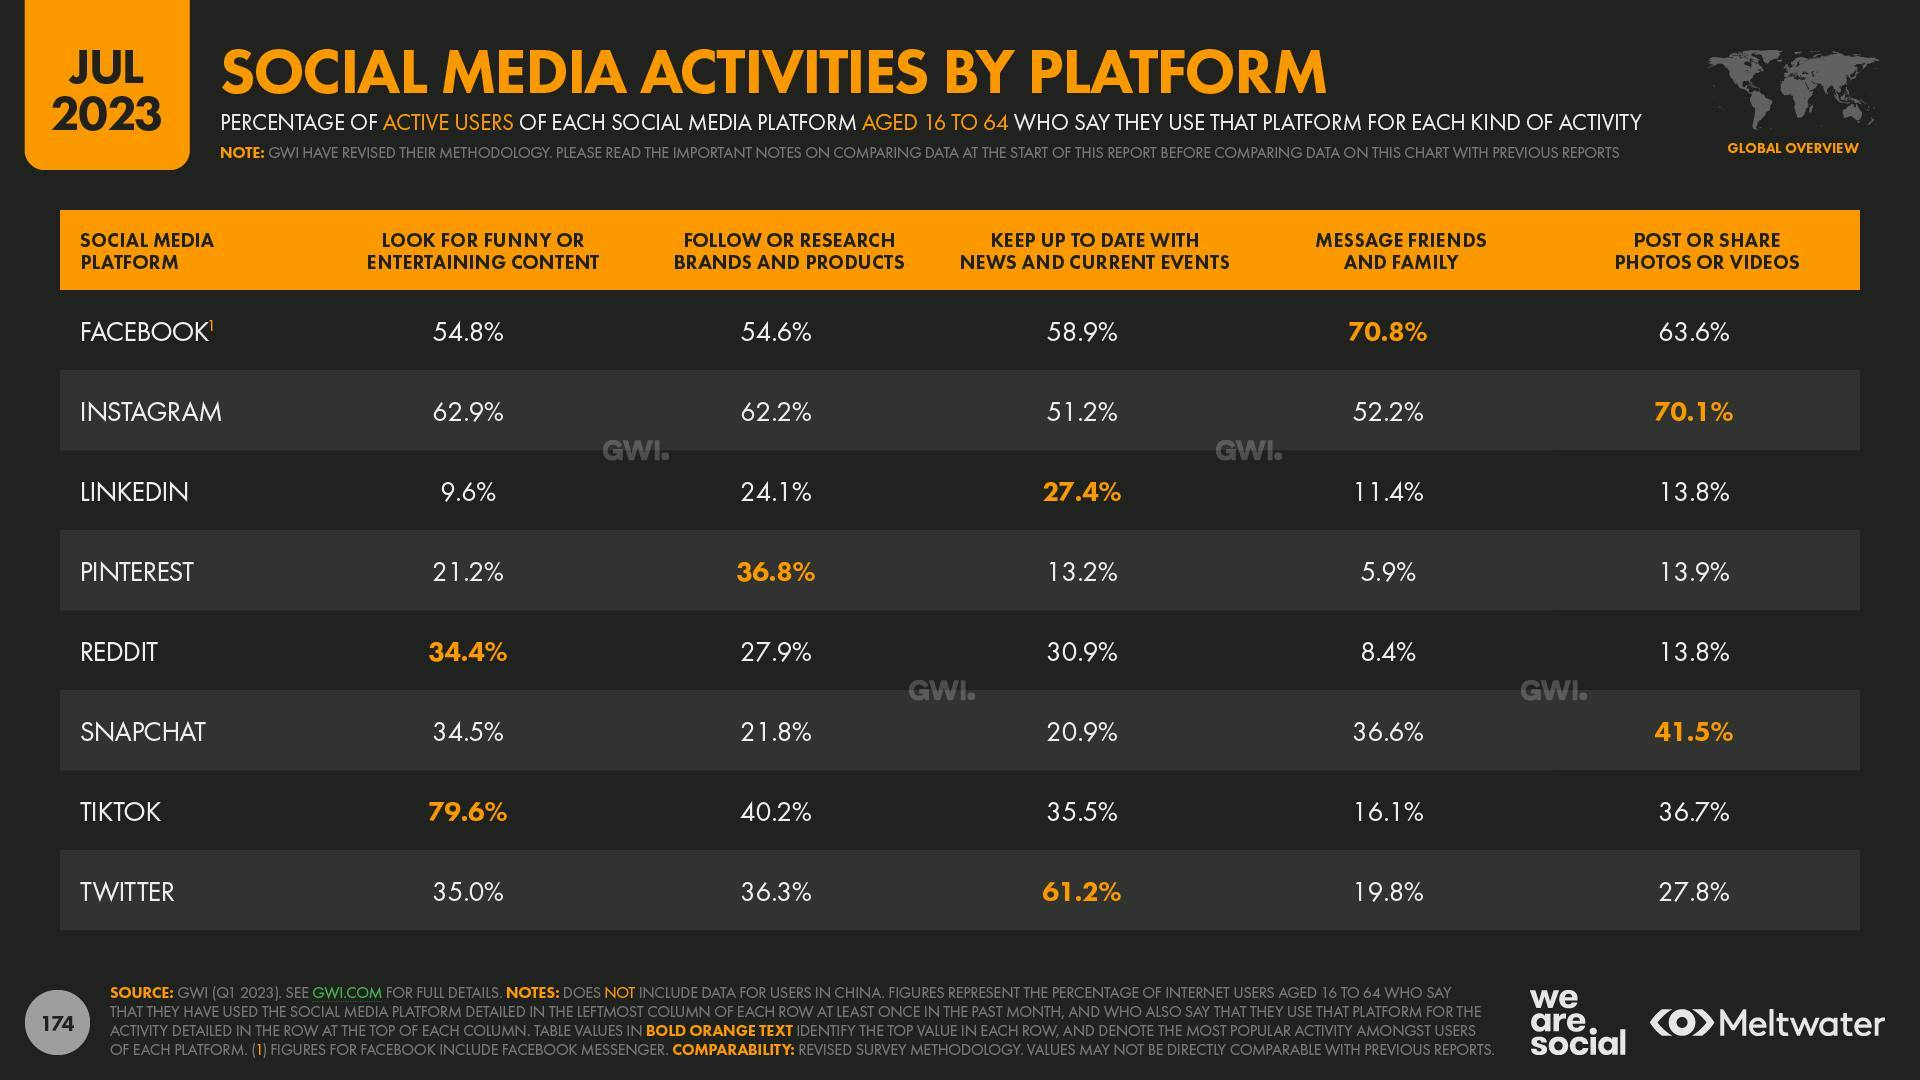 Social media activities by platform